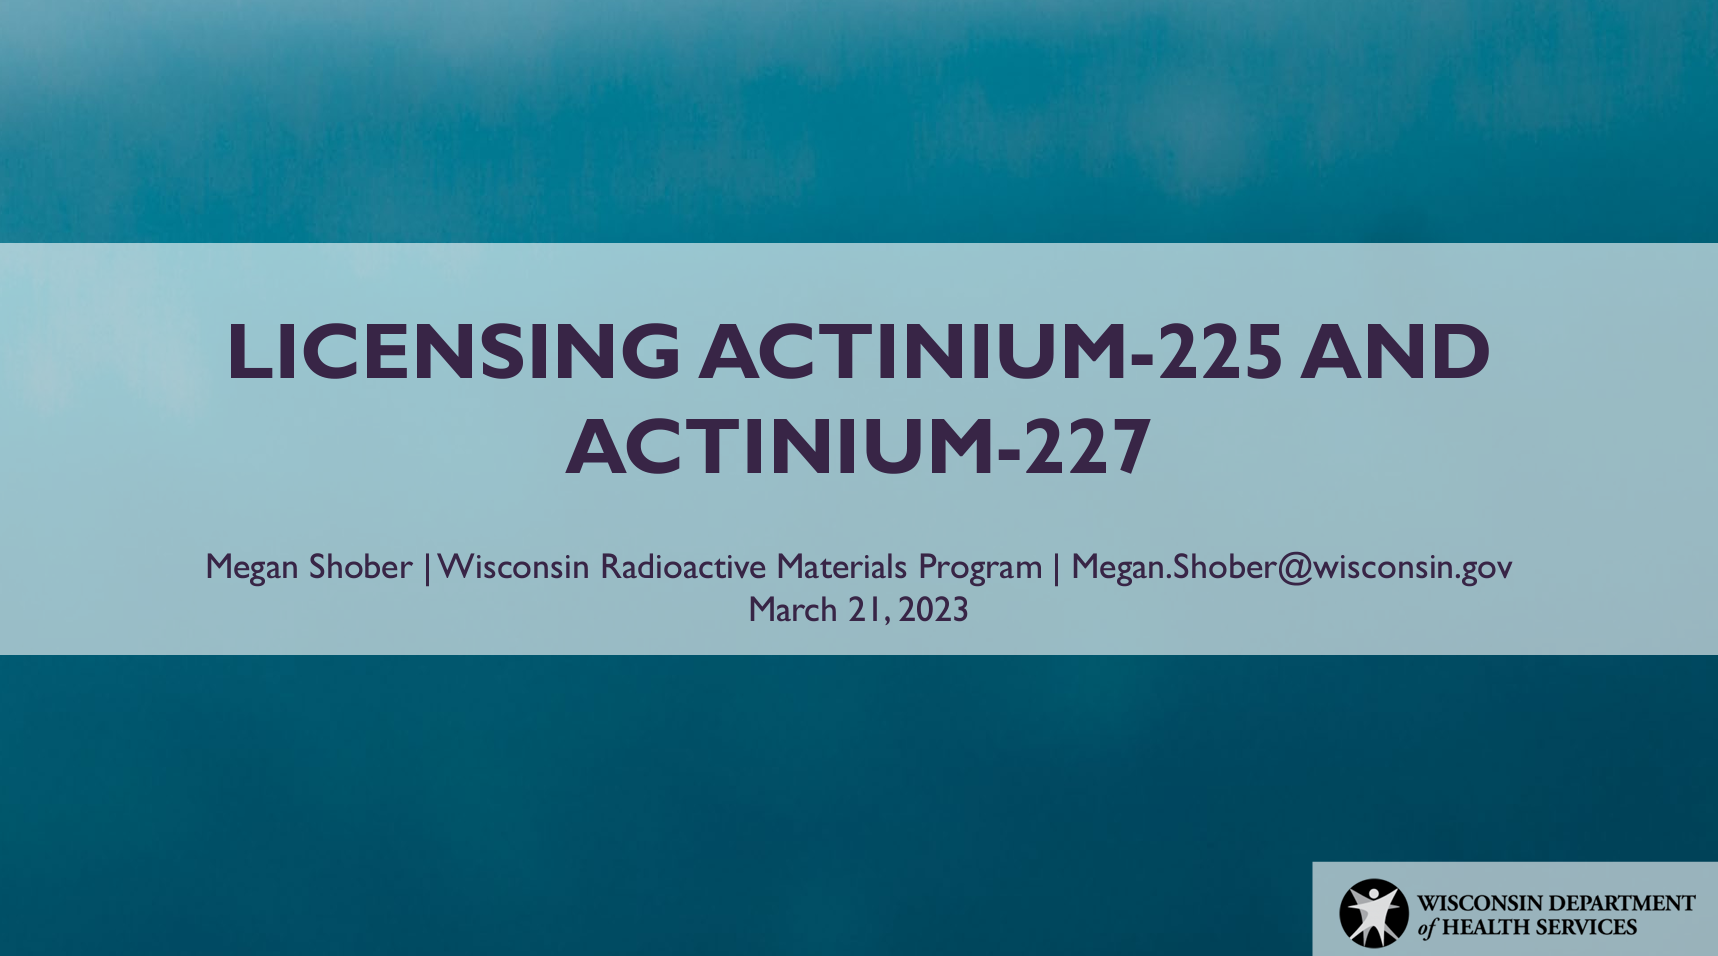 LICENSING ACTINIUM-225 AND ACTINIUM-227